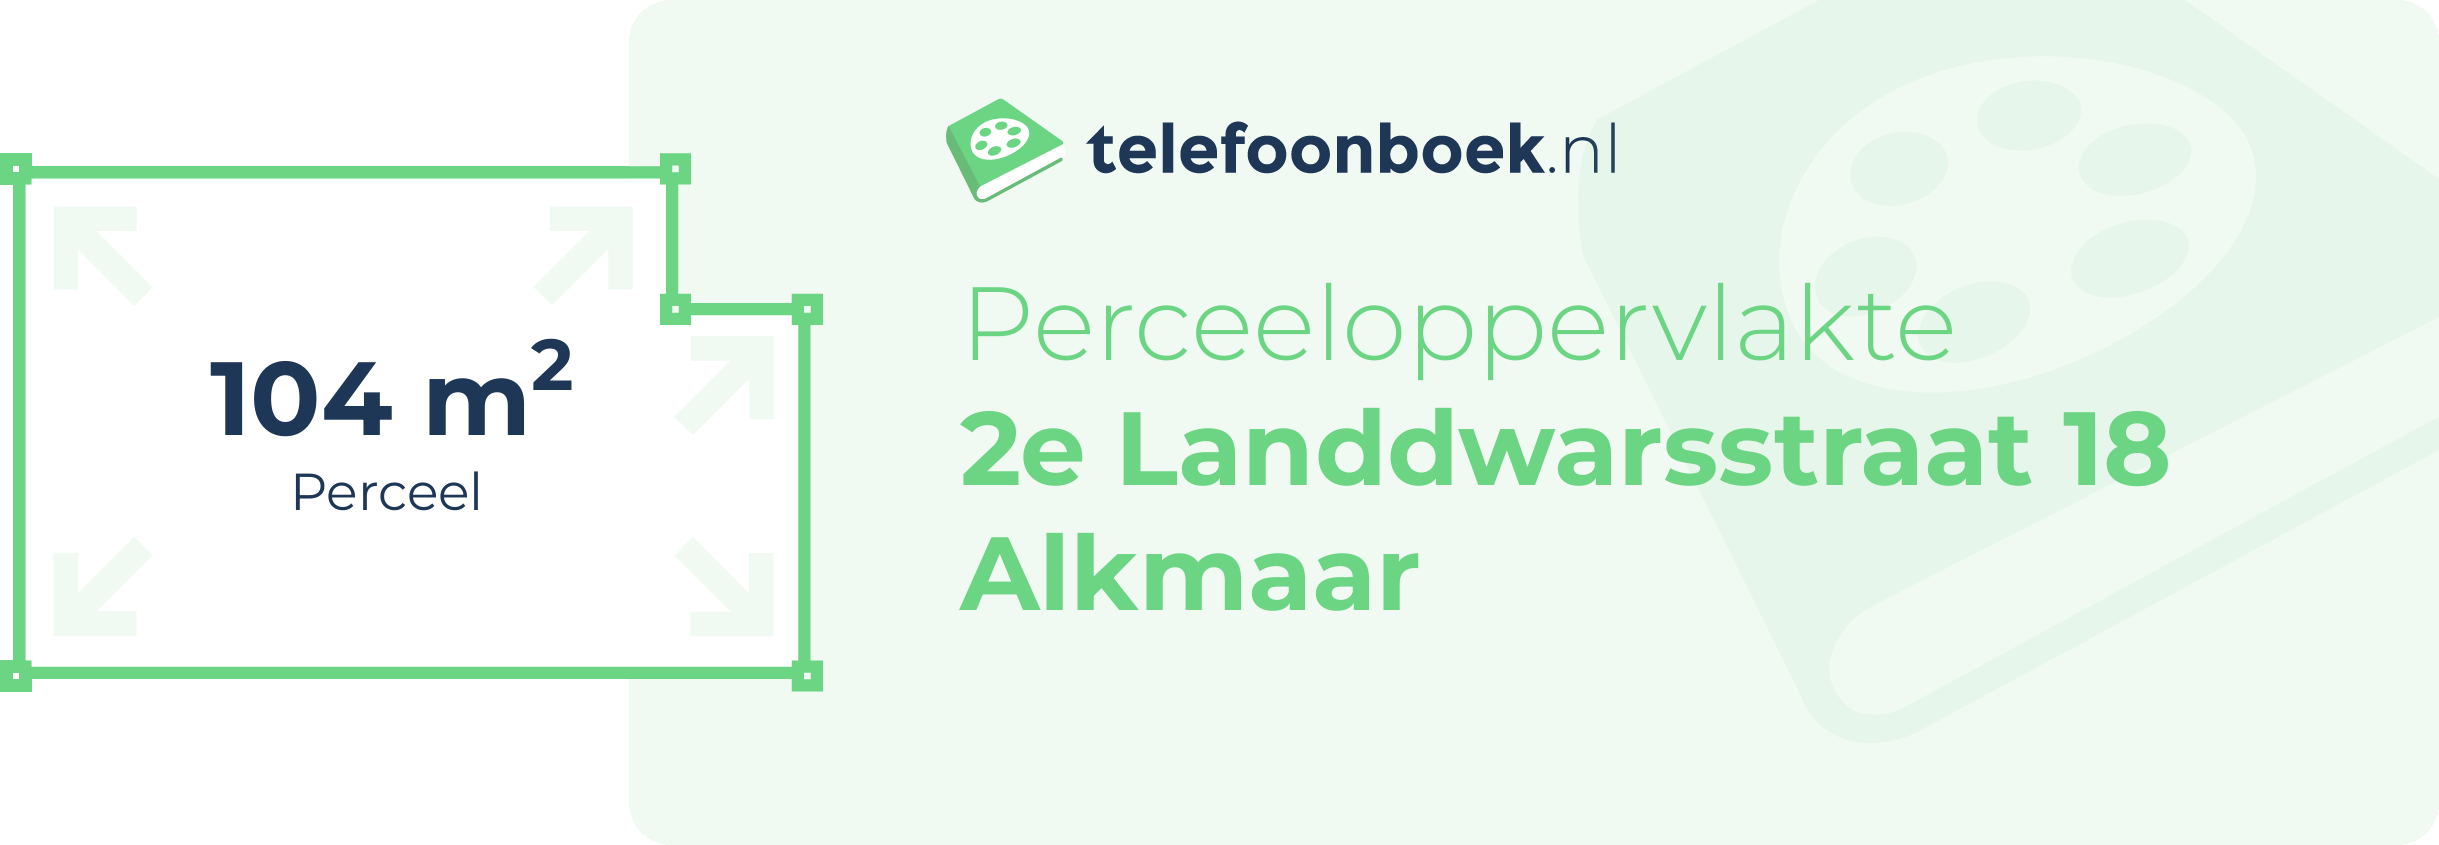 Perceeloppervlakte 2e Landdwarsstraat 18 Alkmaar